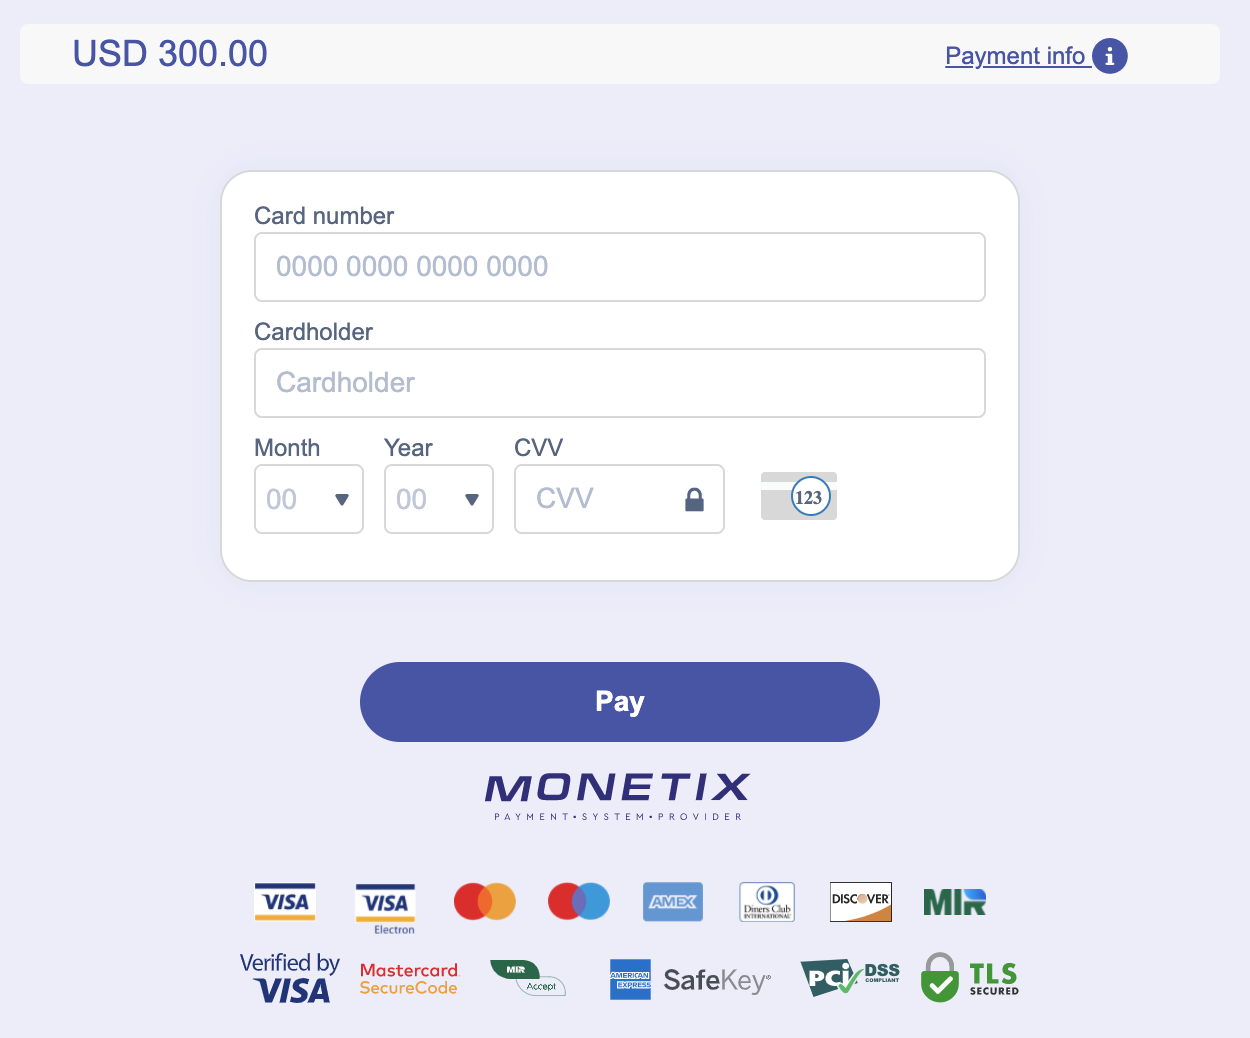 Deposite dinero en Quotex a través de tarjetas bancarias de Filipinas (Visa / MasterCard), bancos de Filipinas, pagos electrónicos (Perfect Money, PayMaya, GCash, GrabPay, Coins.ph) y criptomonedas